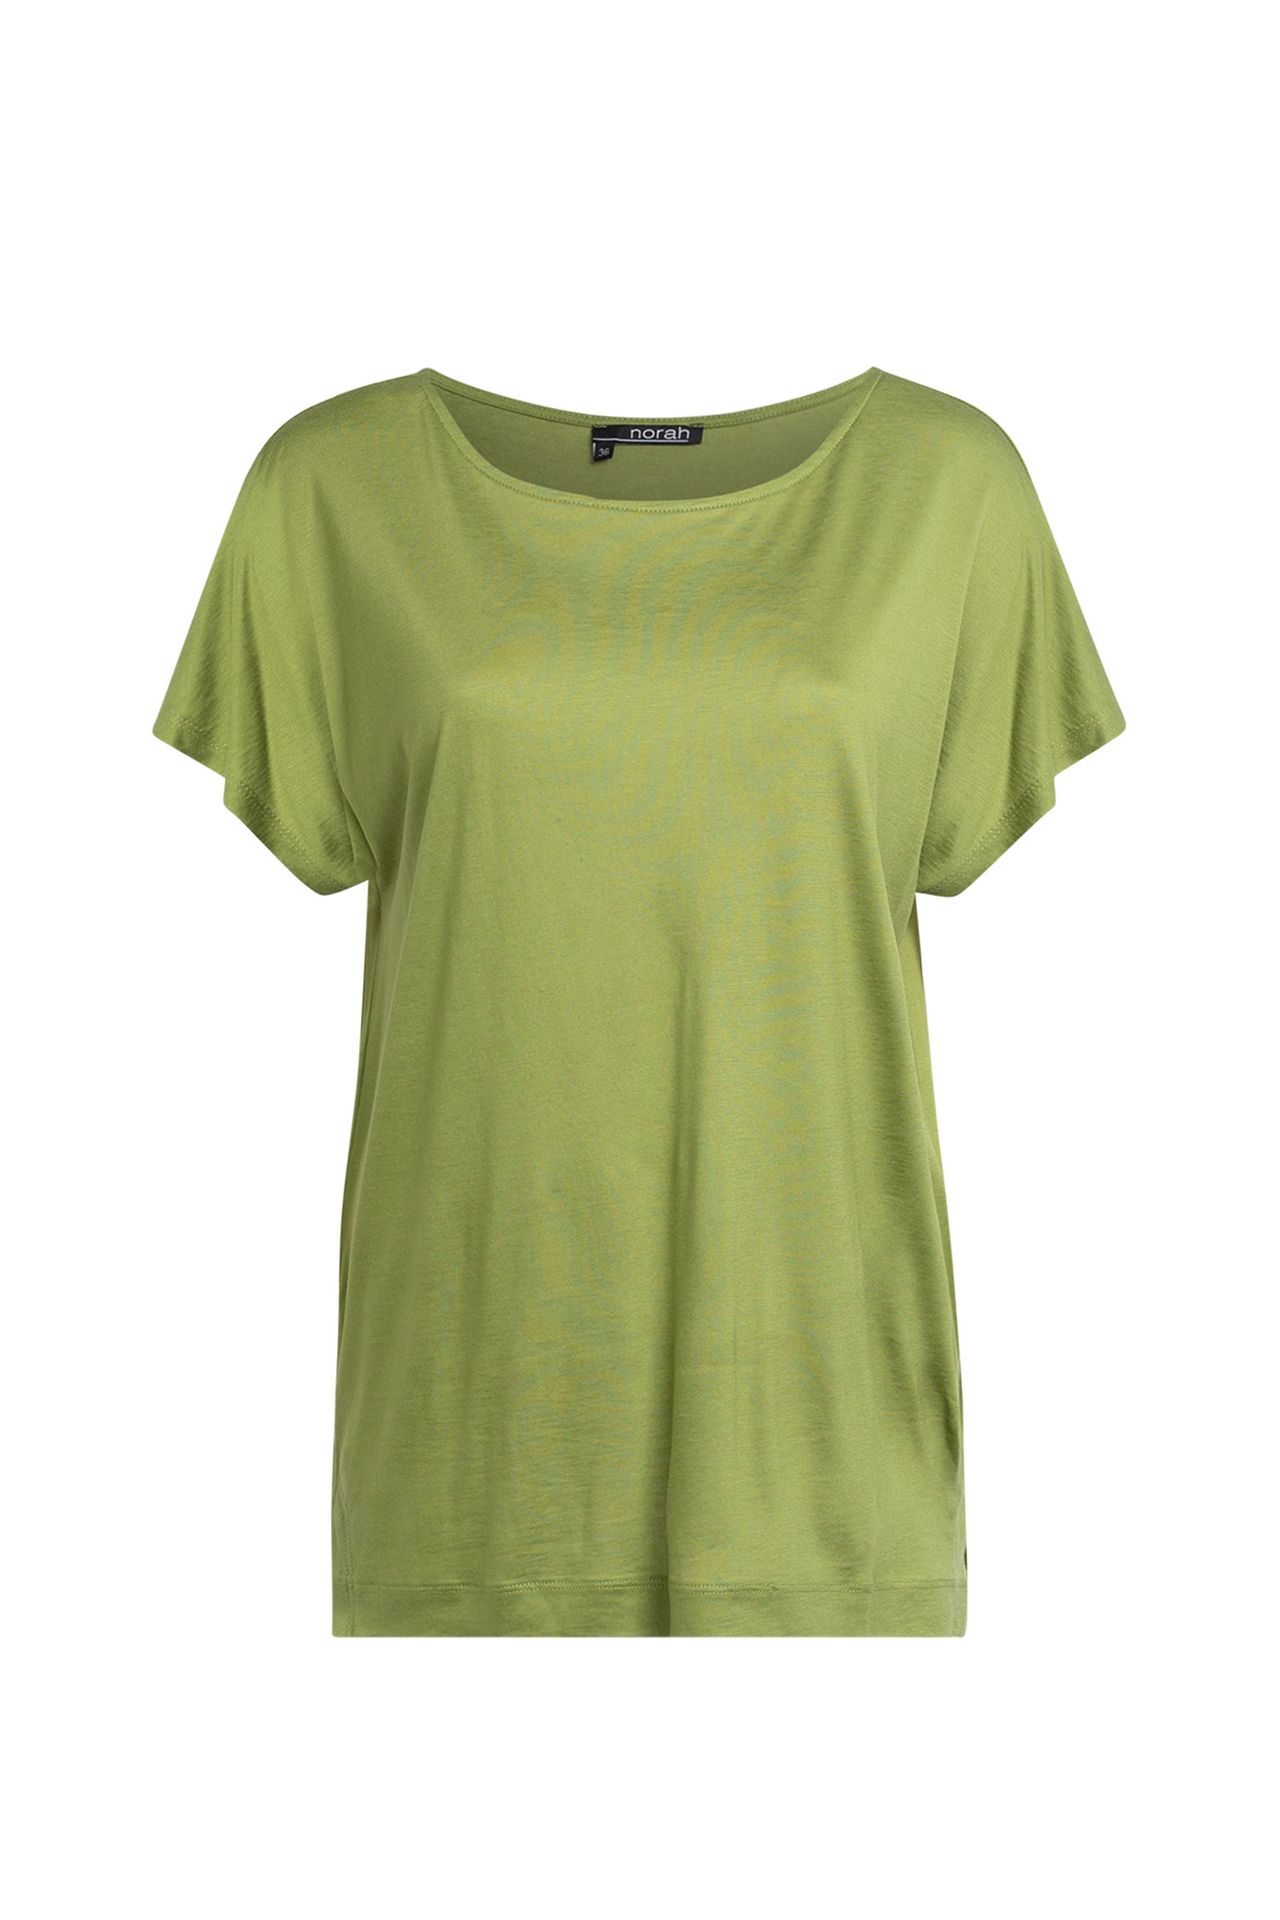 Norah Shirt groen avocado 209618-523